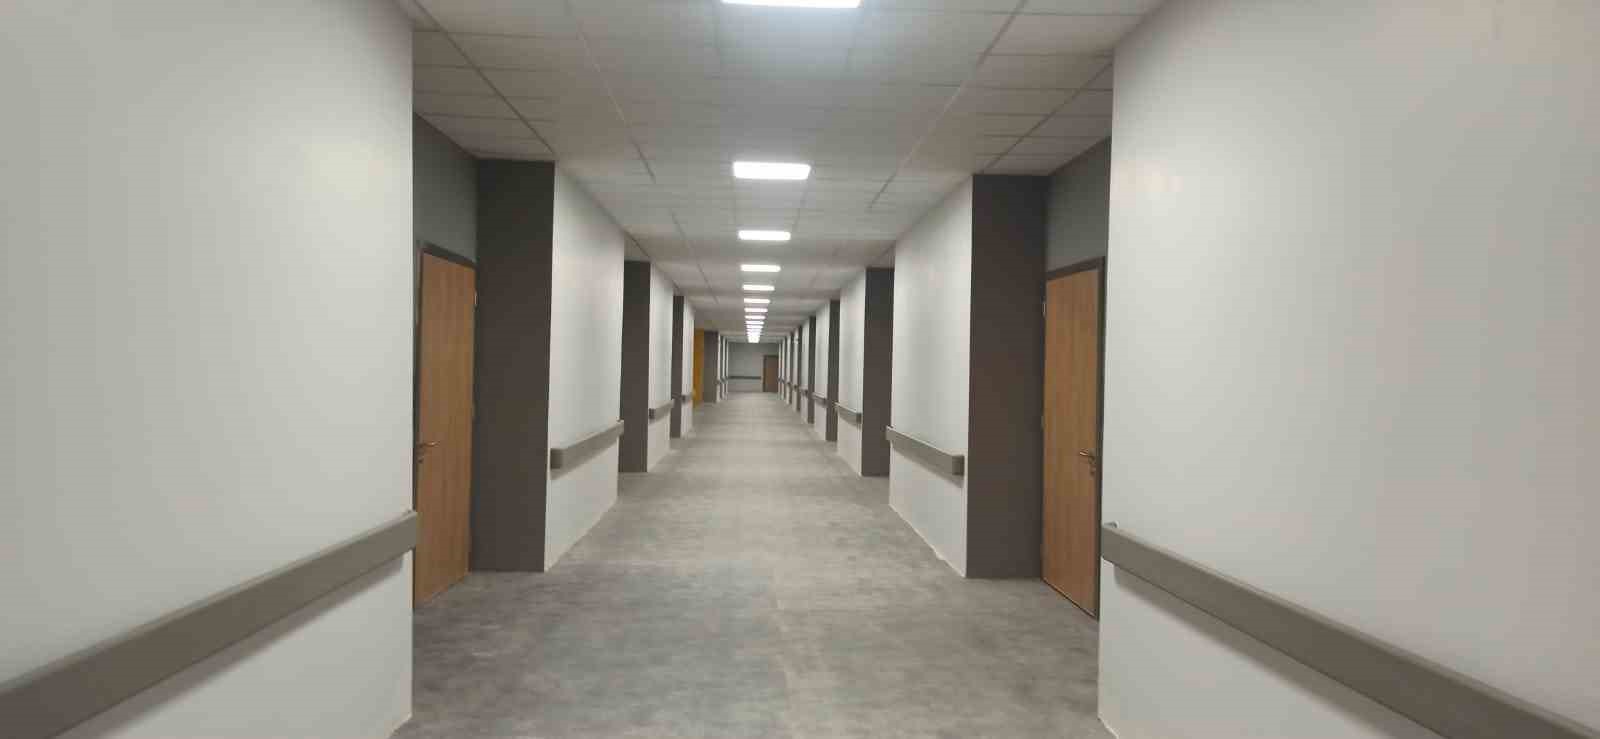 Bakan Koca, inşası süren Hatay Defne Devlet Hastanesinin son durumunu paylaştı